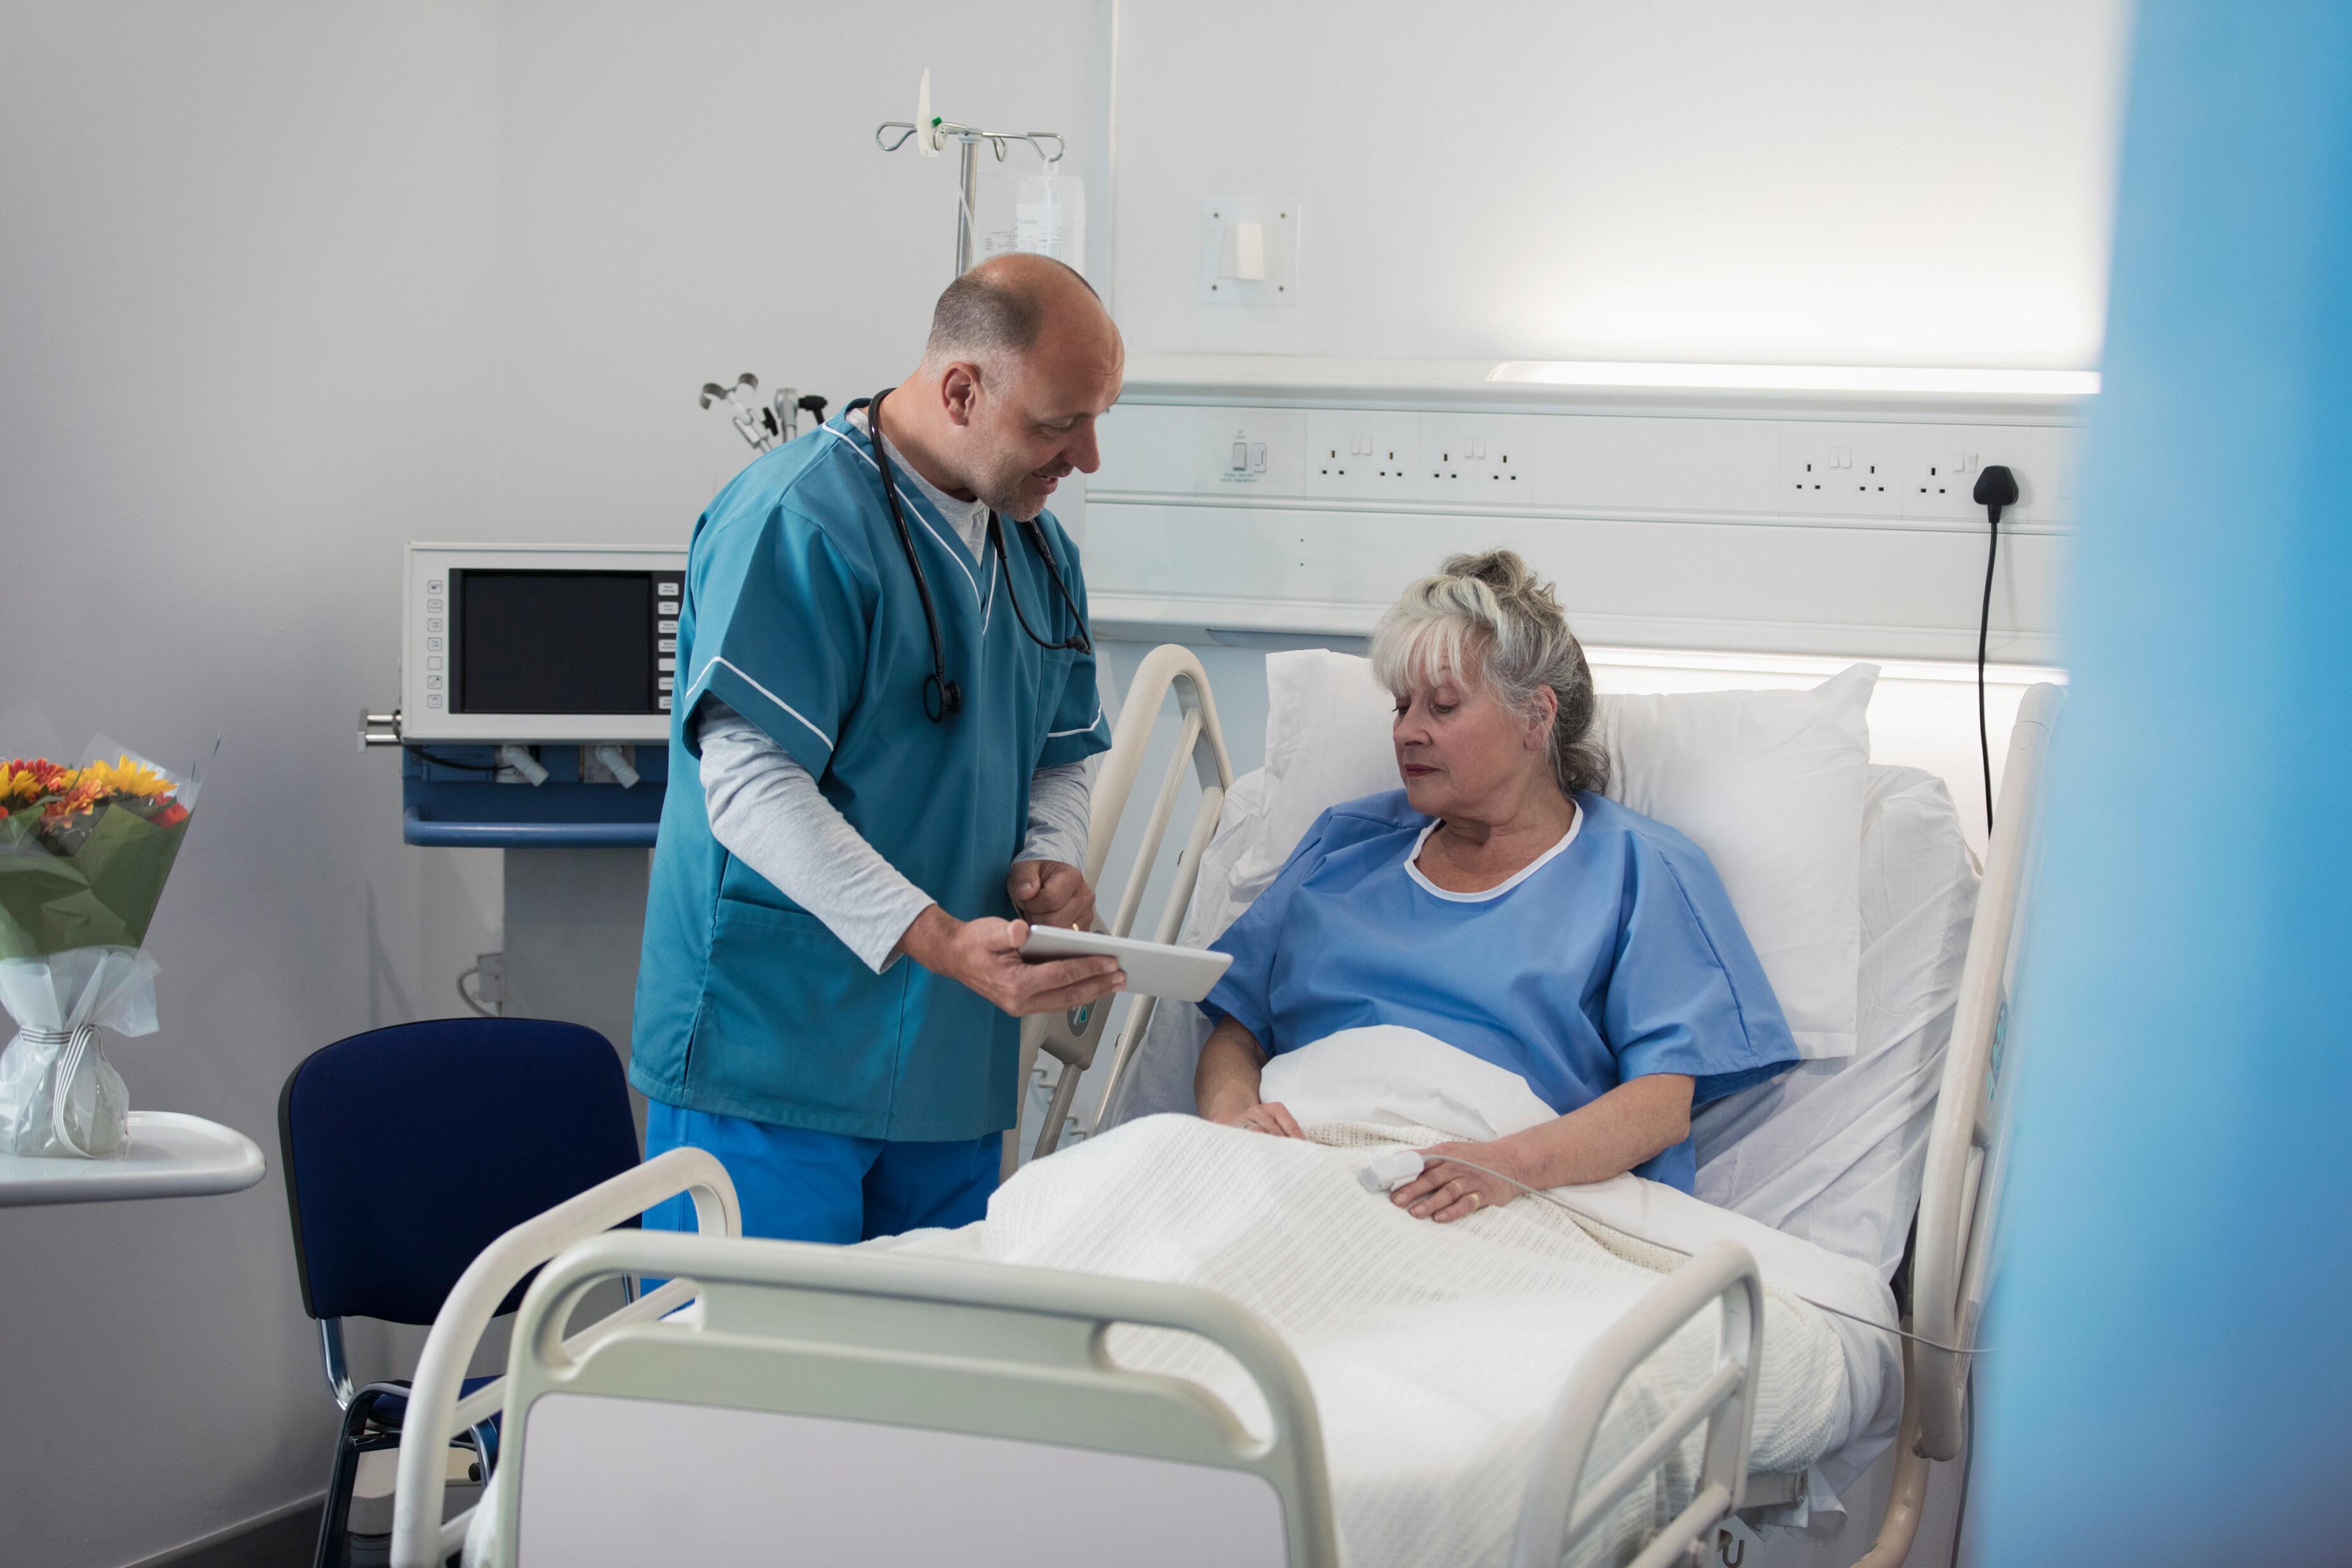 Un médecin dans une chambre d'hôpital montre des documents à une patiente allongée sur son lit.